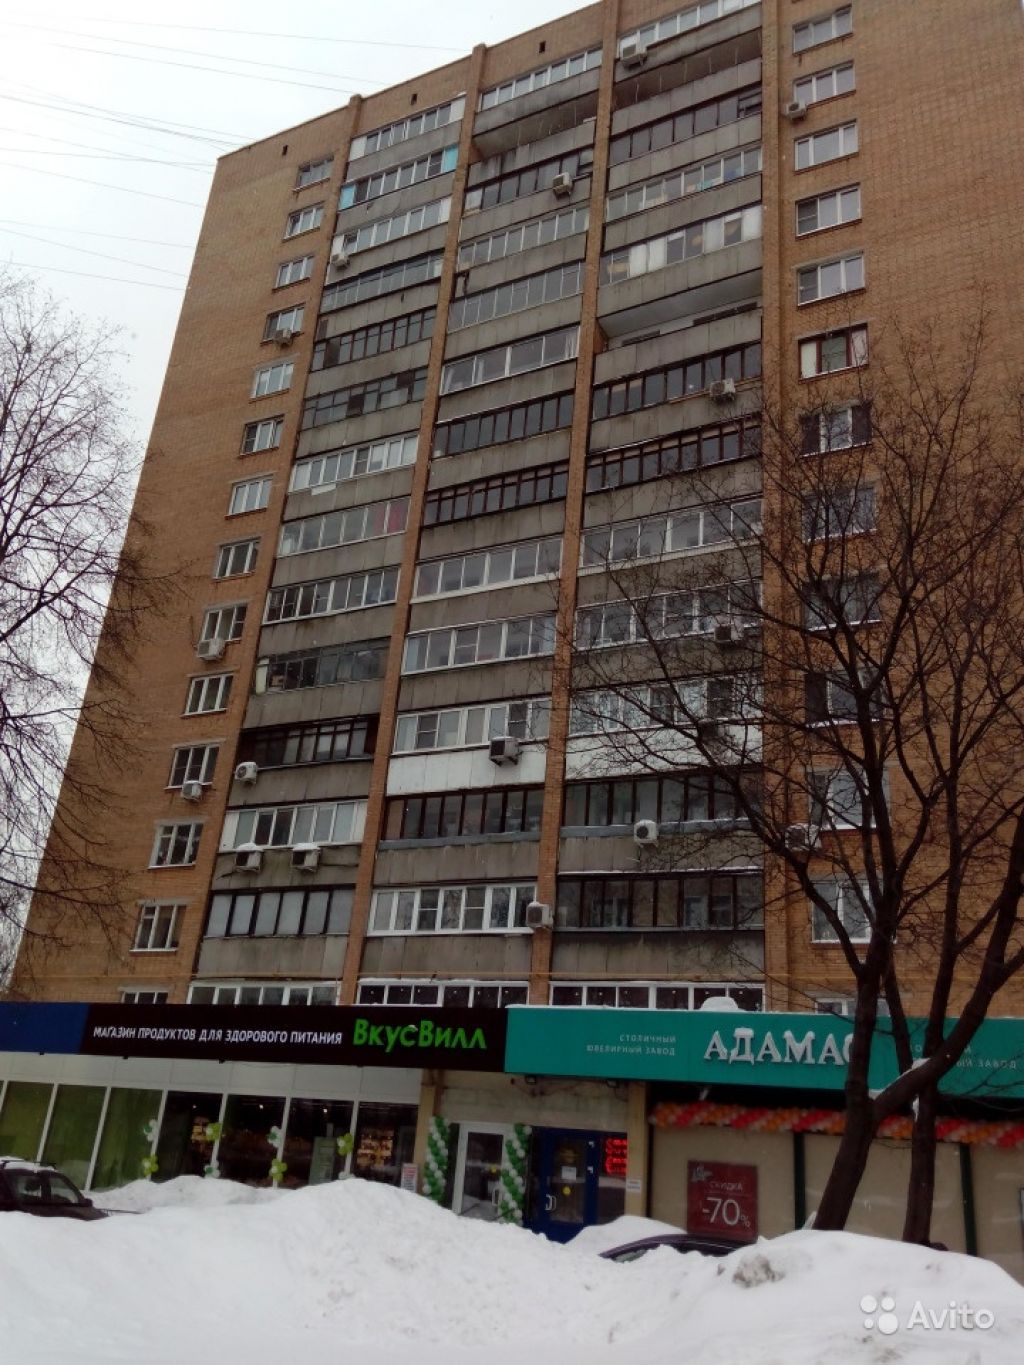 Продам квартиру 1-к квартира 36 м² на 11 этаже 15-этажного кирпичного дома в Москве. Фото 1